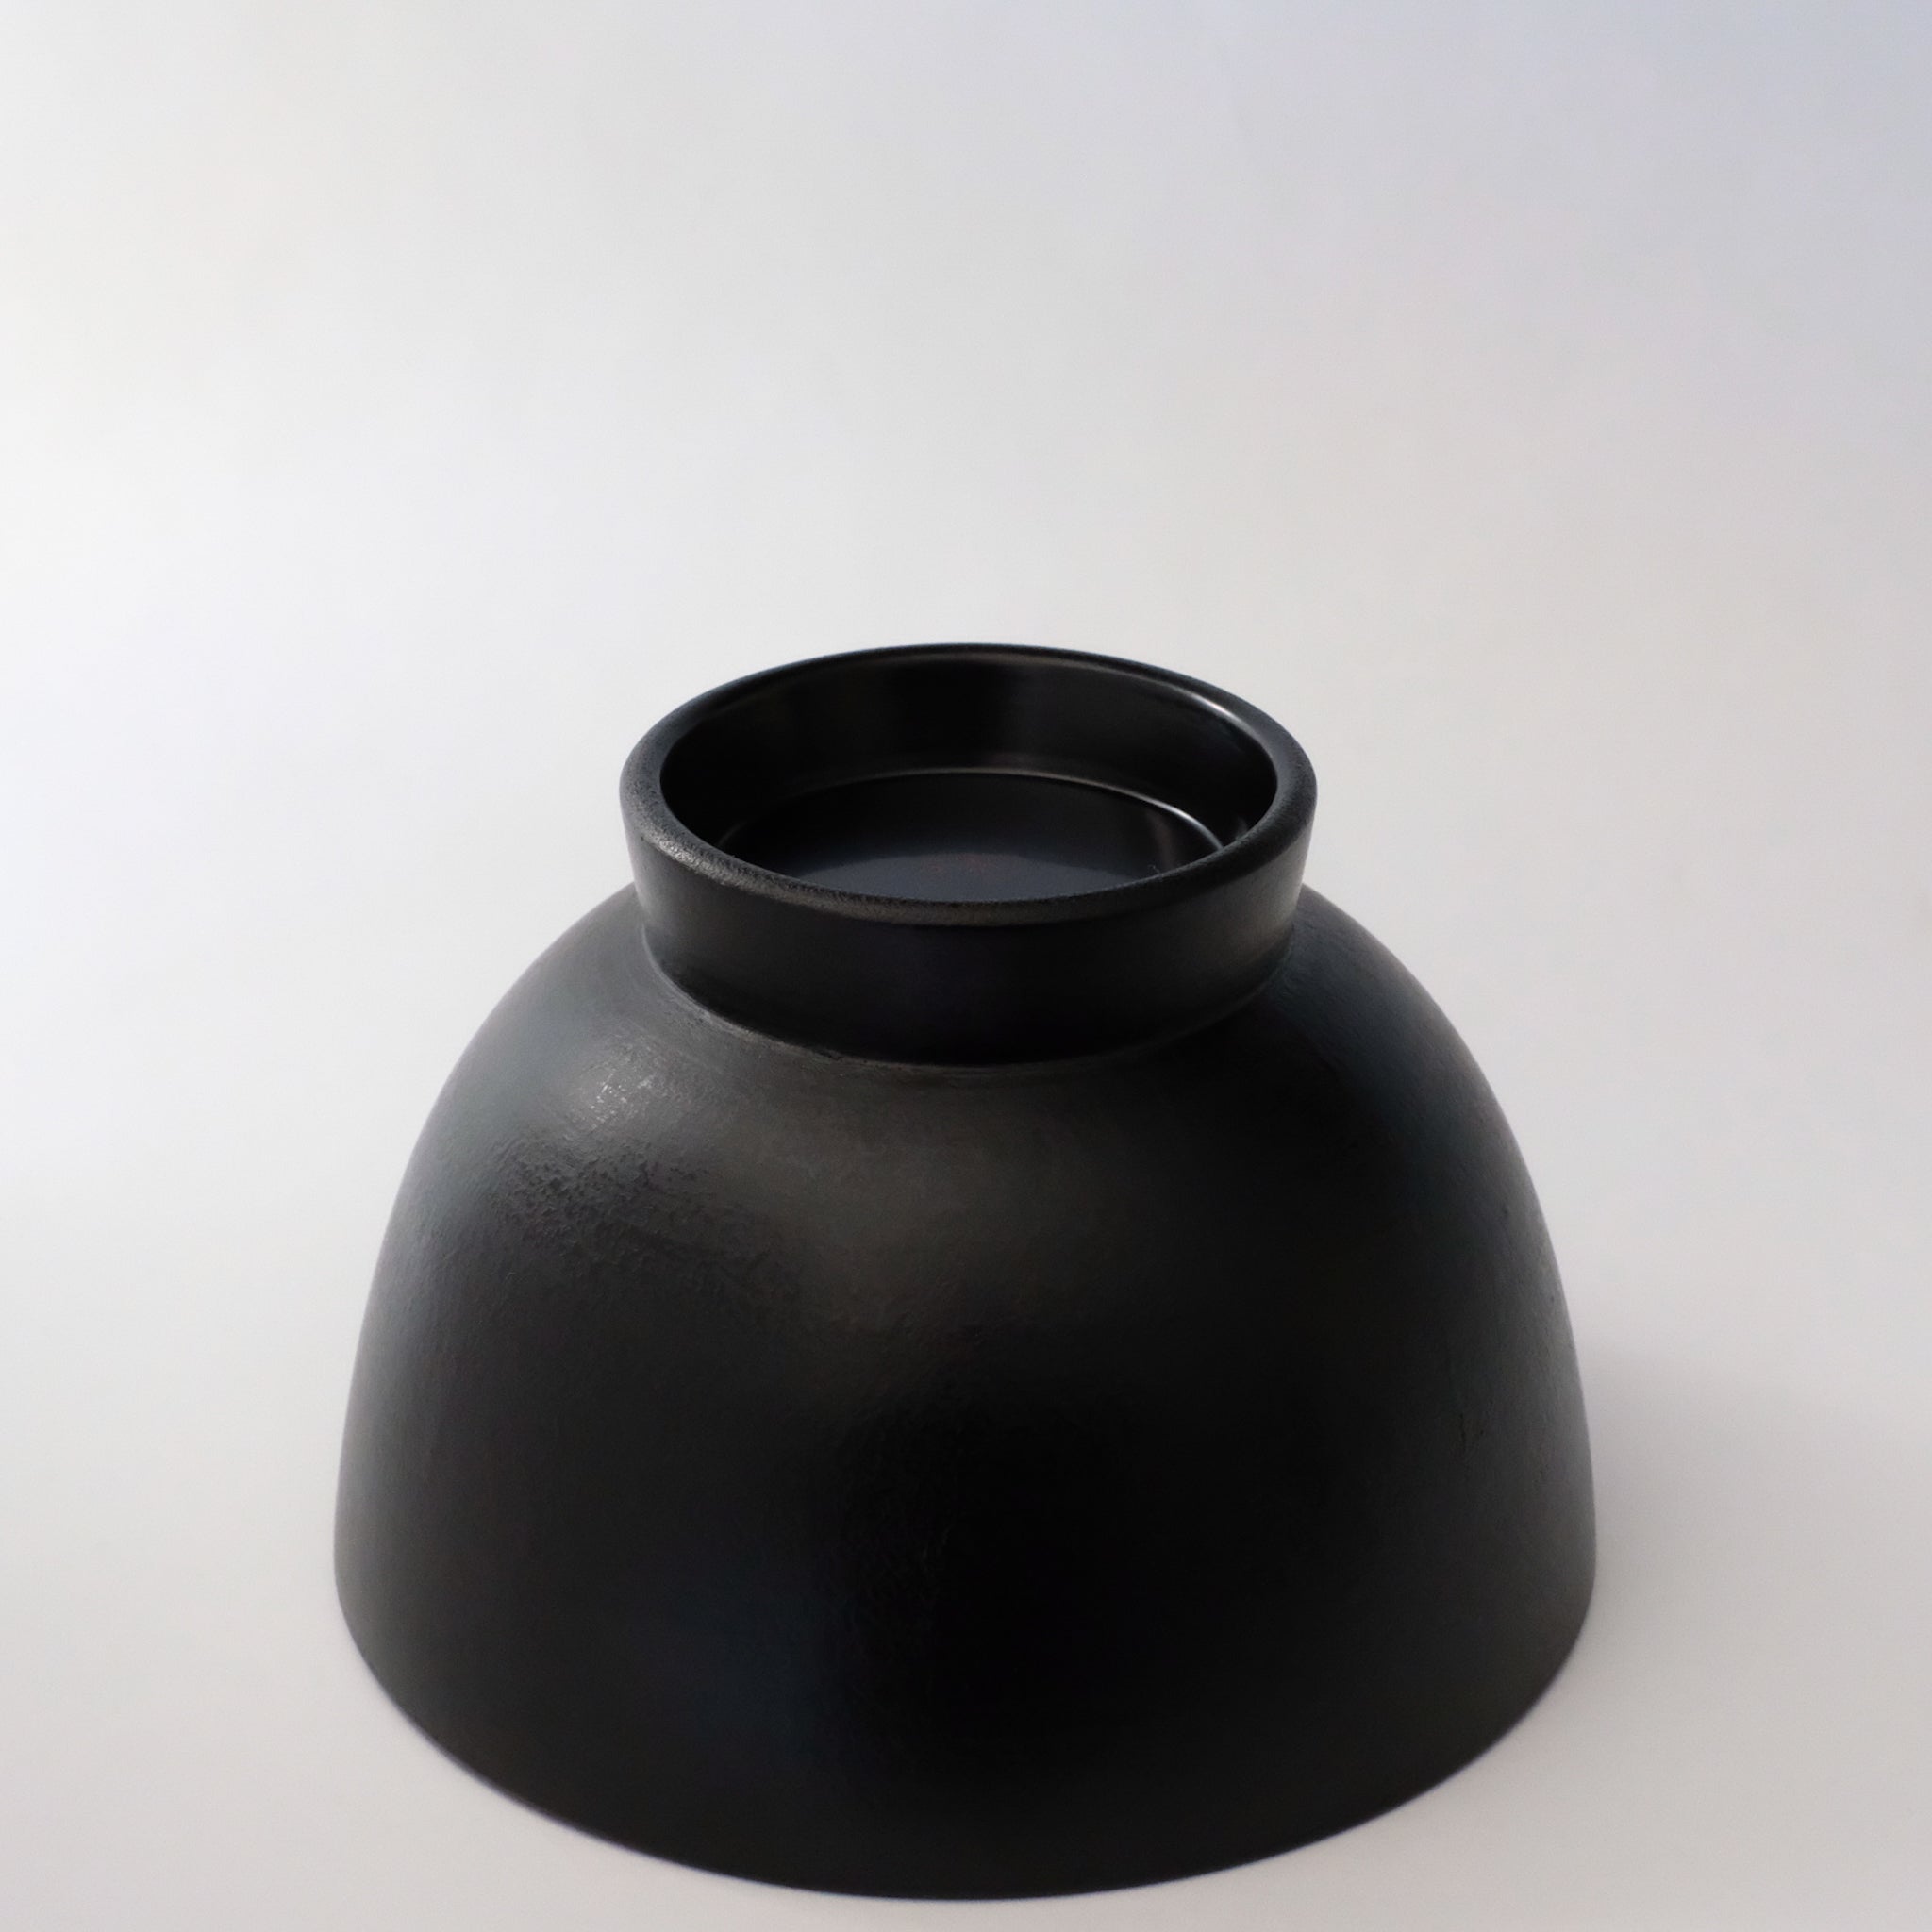 赤木明登  蕎麦椀 (黒)  Akito Akagi Soba Noodle Bowl ( Black )